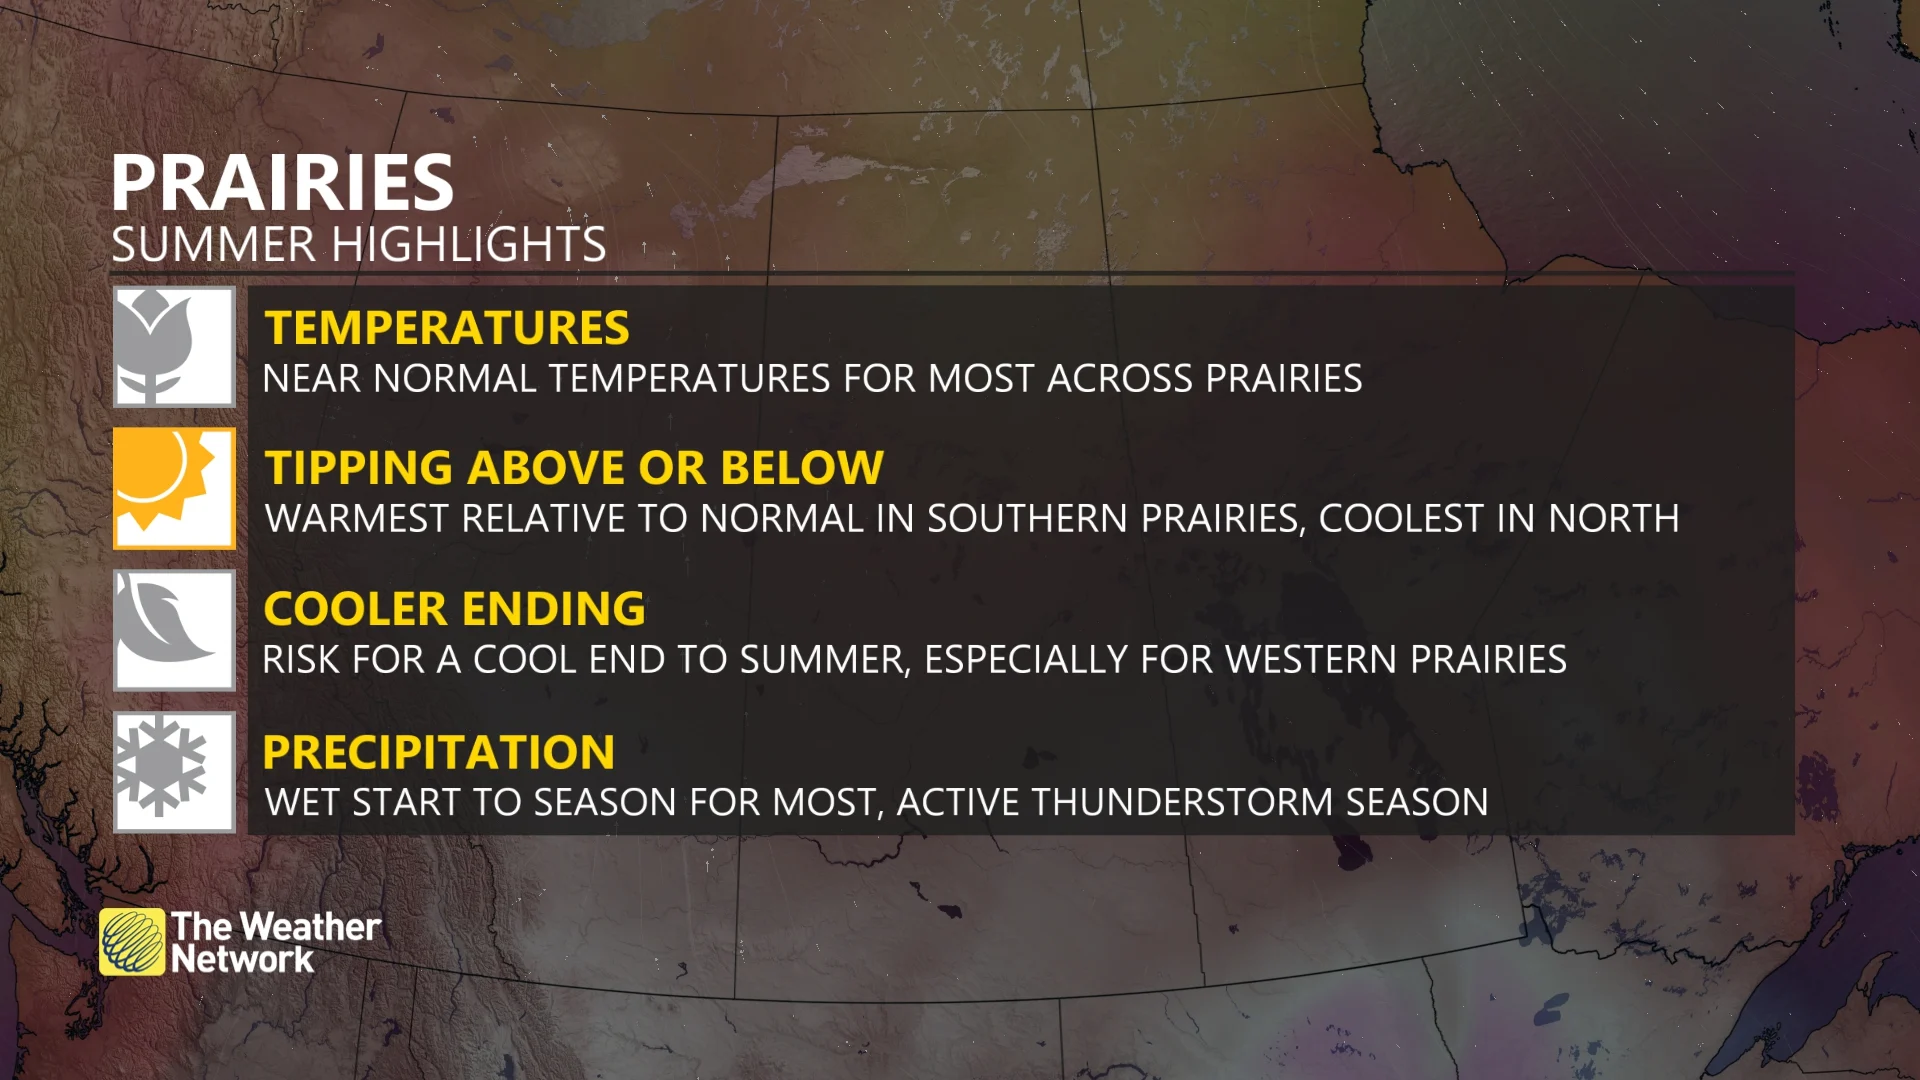 Prairies summer highlights - 2020